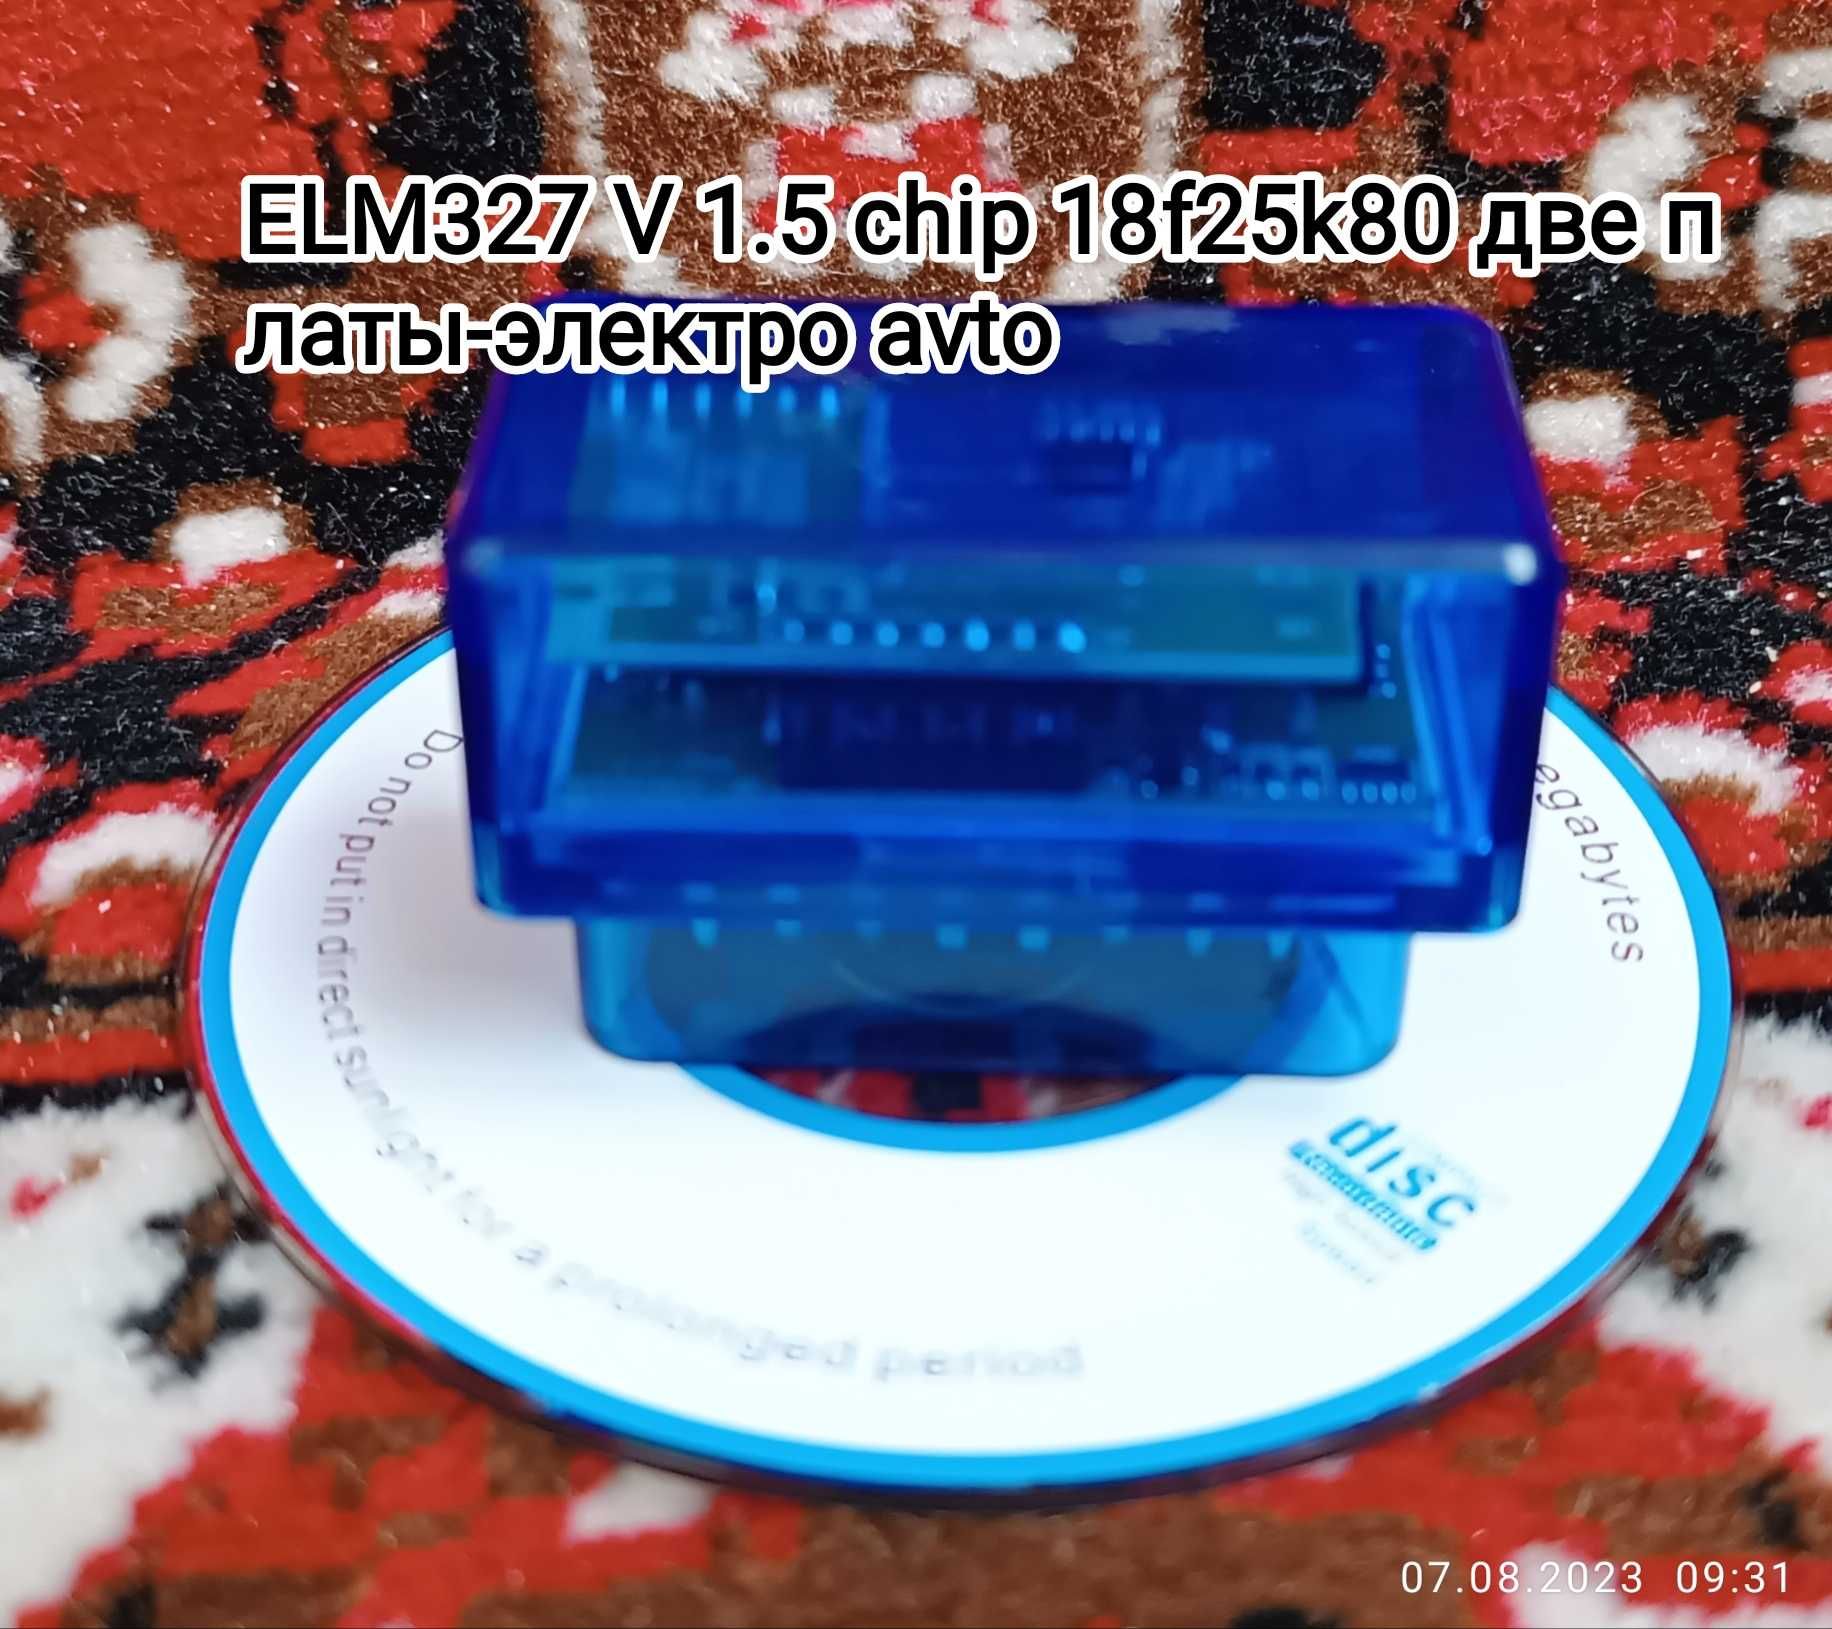 Elm 327 v 1.5 chip 18f25k80 две платы автосканер обд2